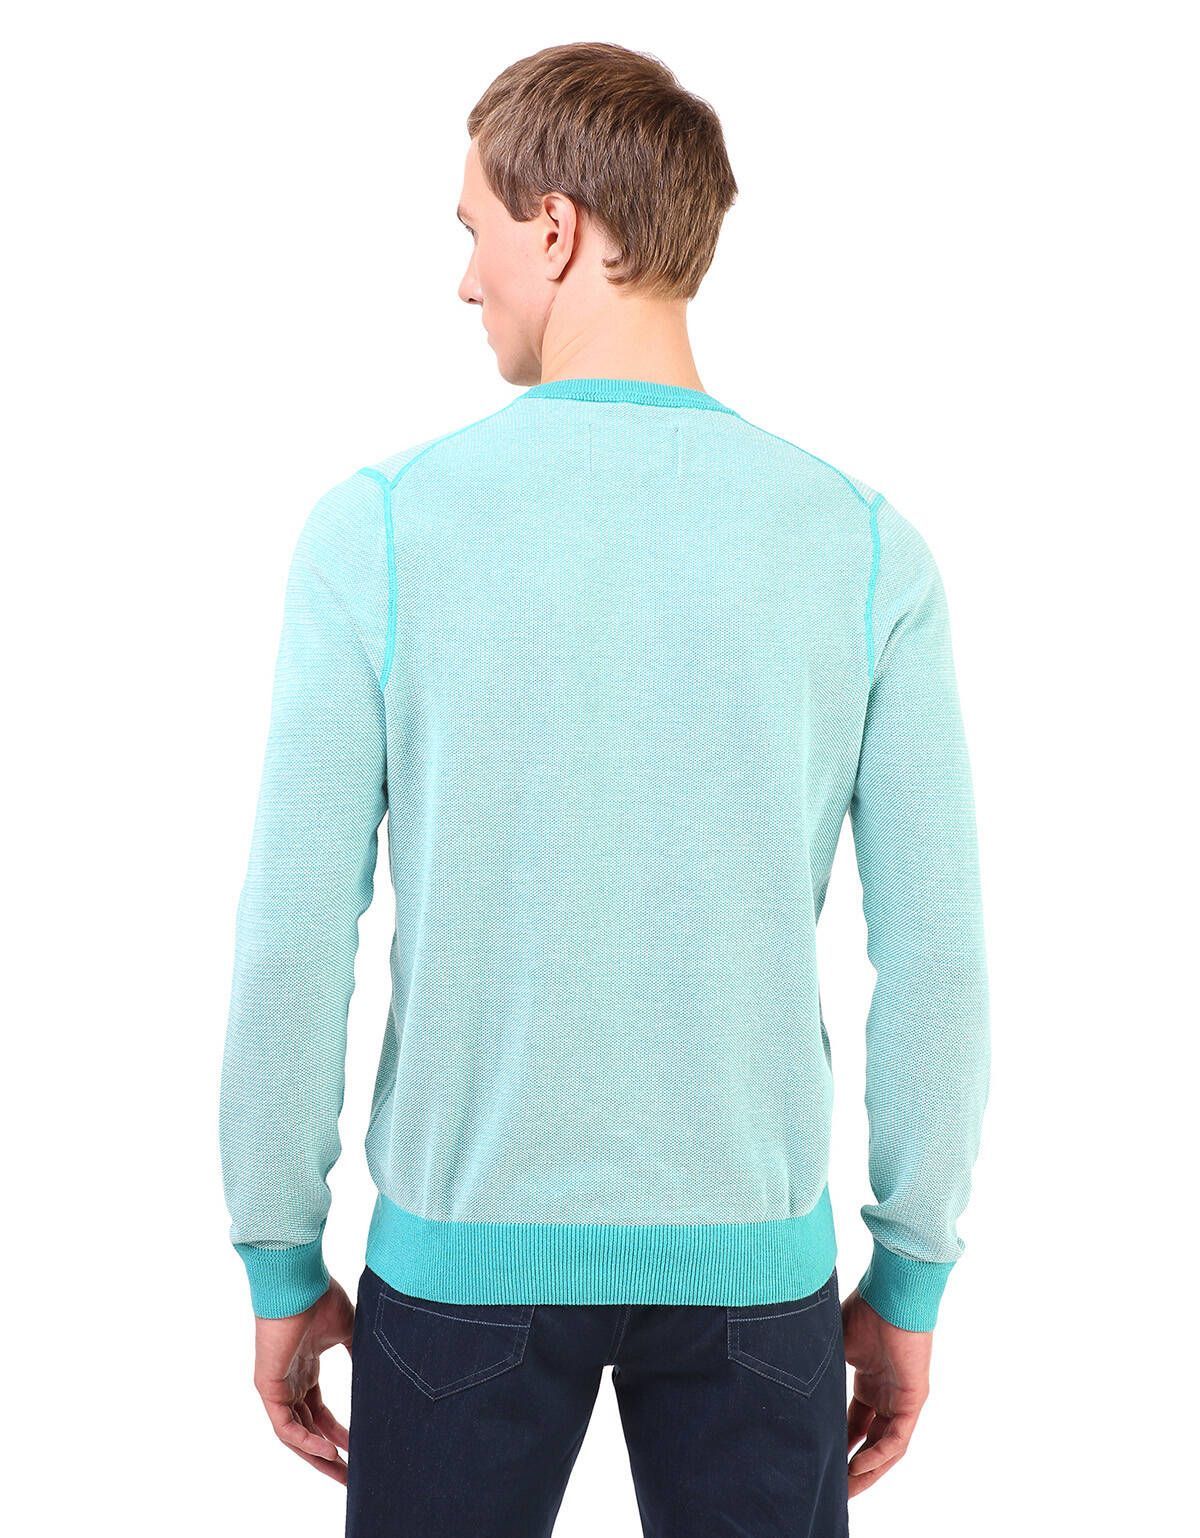 Пуловер с круглым вырезом Marvelis бирюзовый | купить в интернет-магазине Olymp-Men